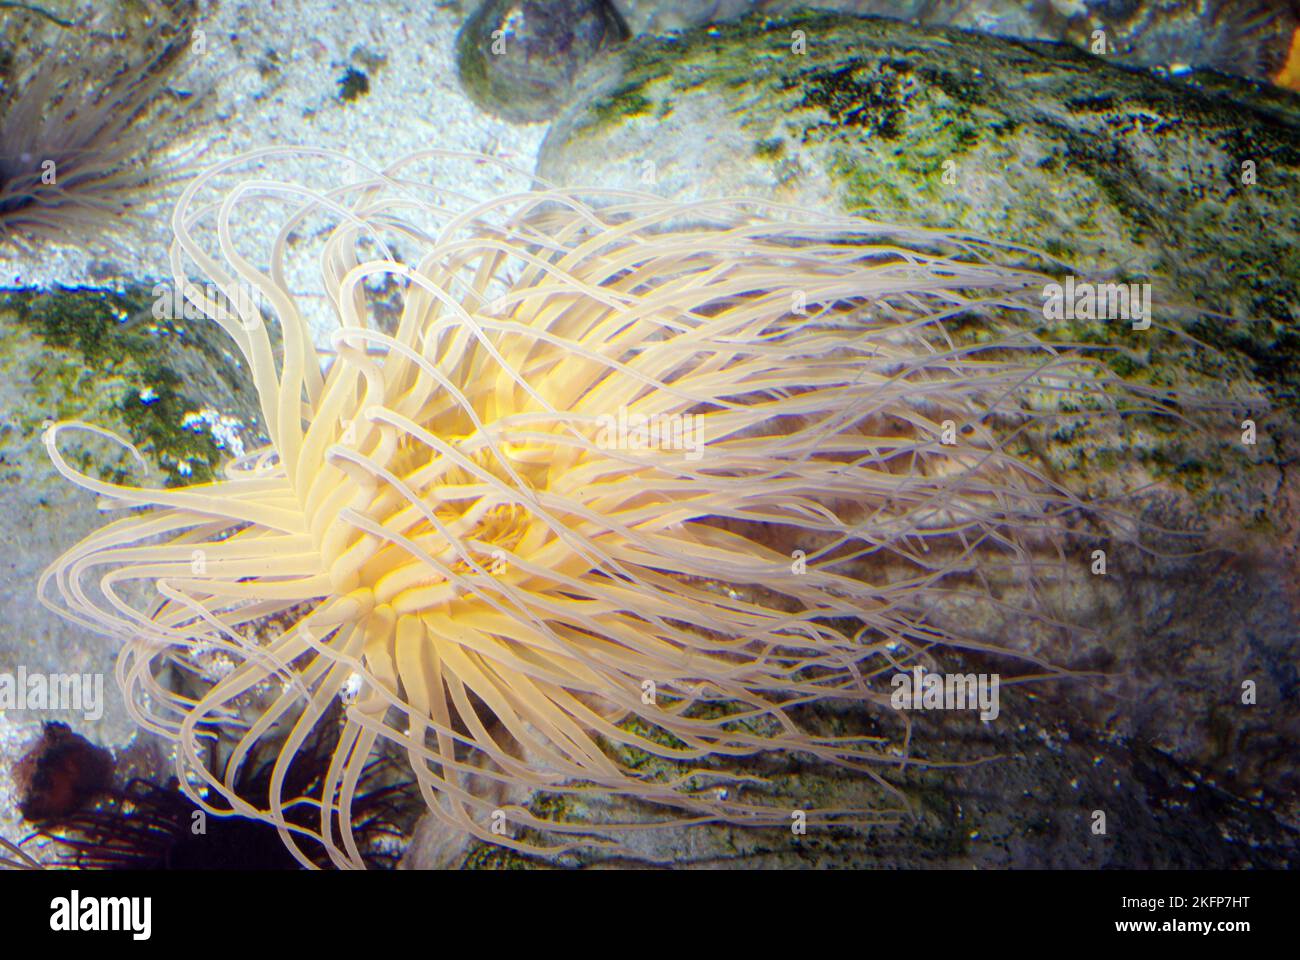 Anemone di mare, Pachycerianthus maa, dimora di tubi o fuochi d'artificio Foto Stock